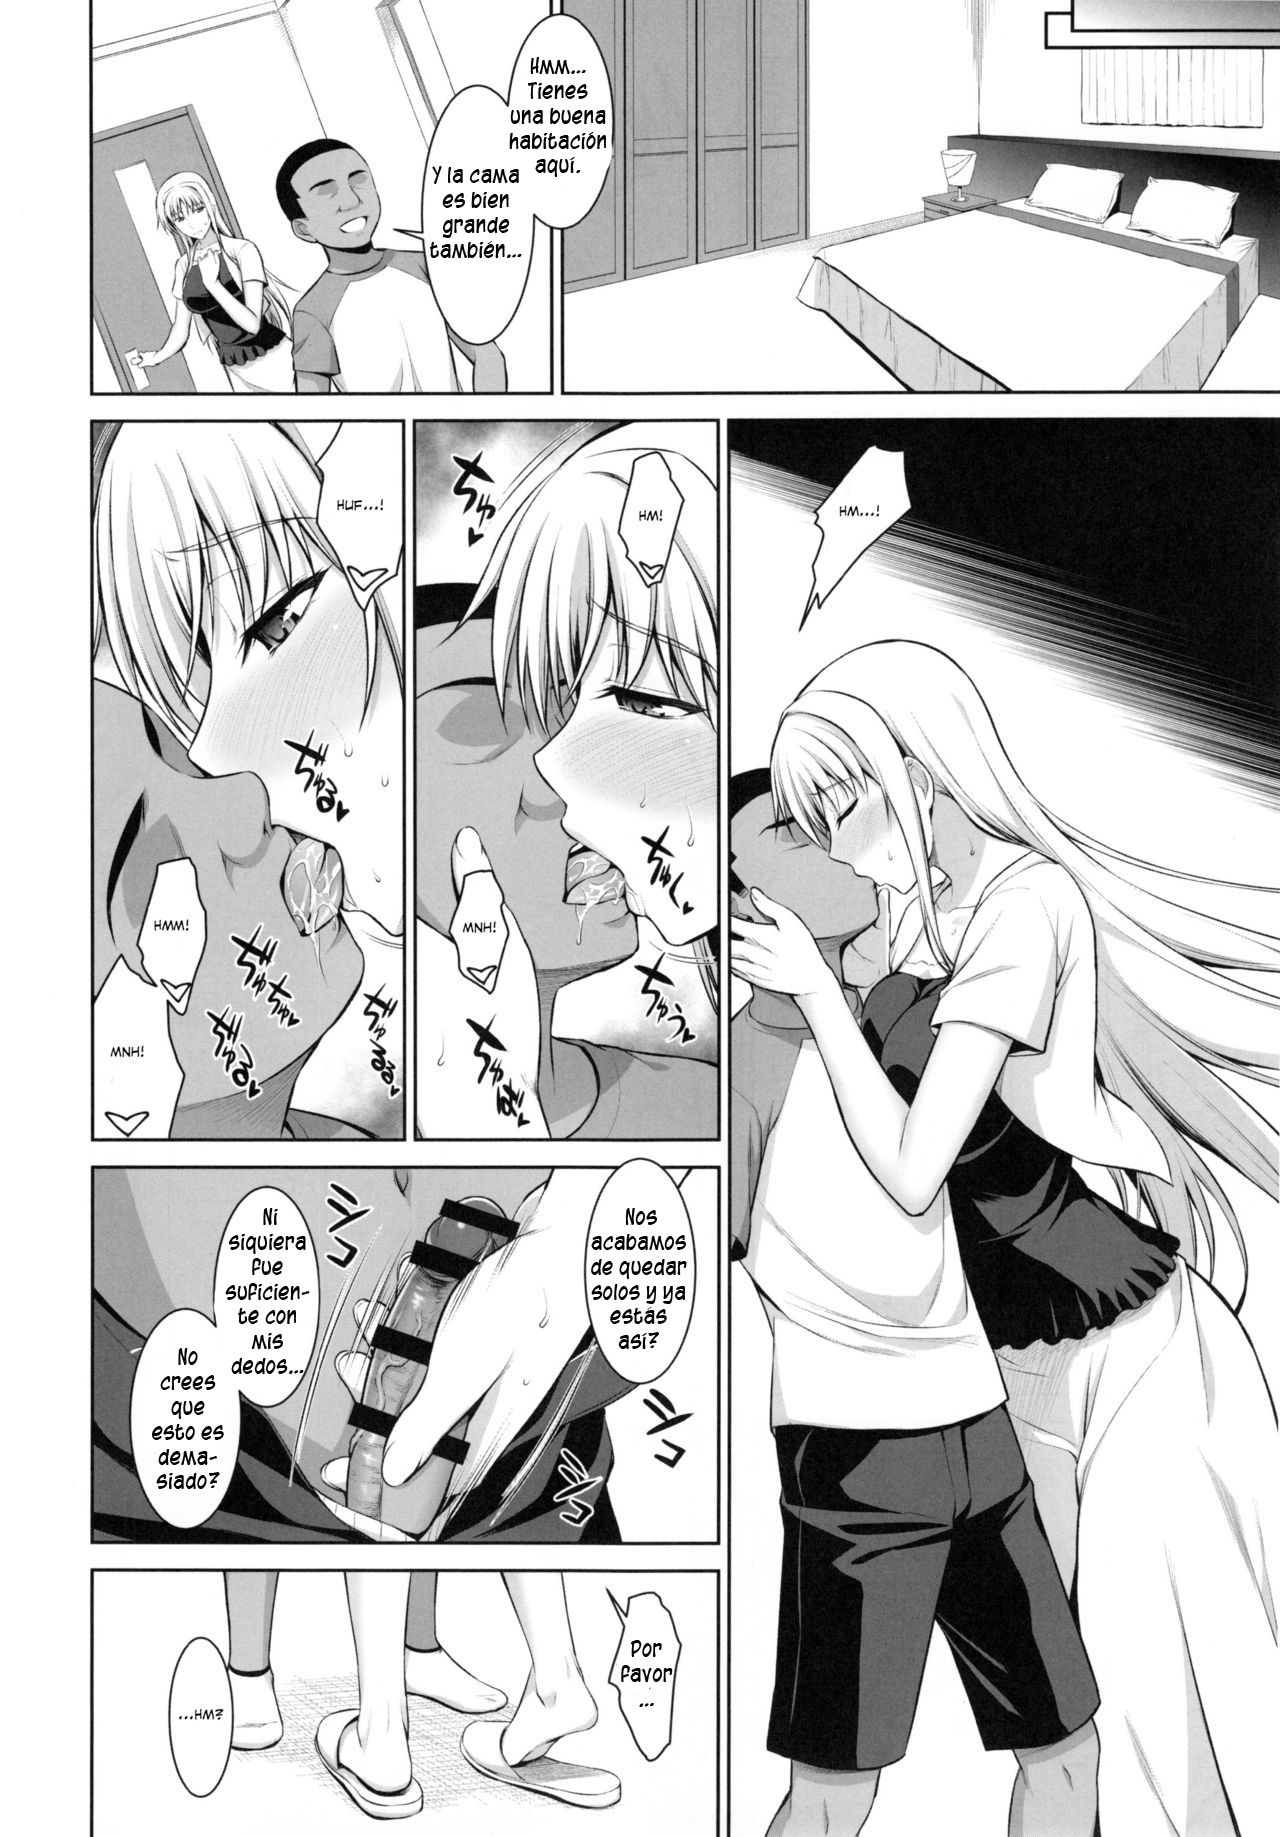 Mating Dance -Fate Chapter 3 (Mahou Shoujo Lyrical Nanoha) - 22